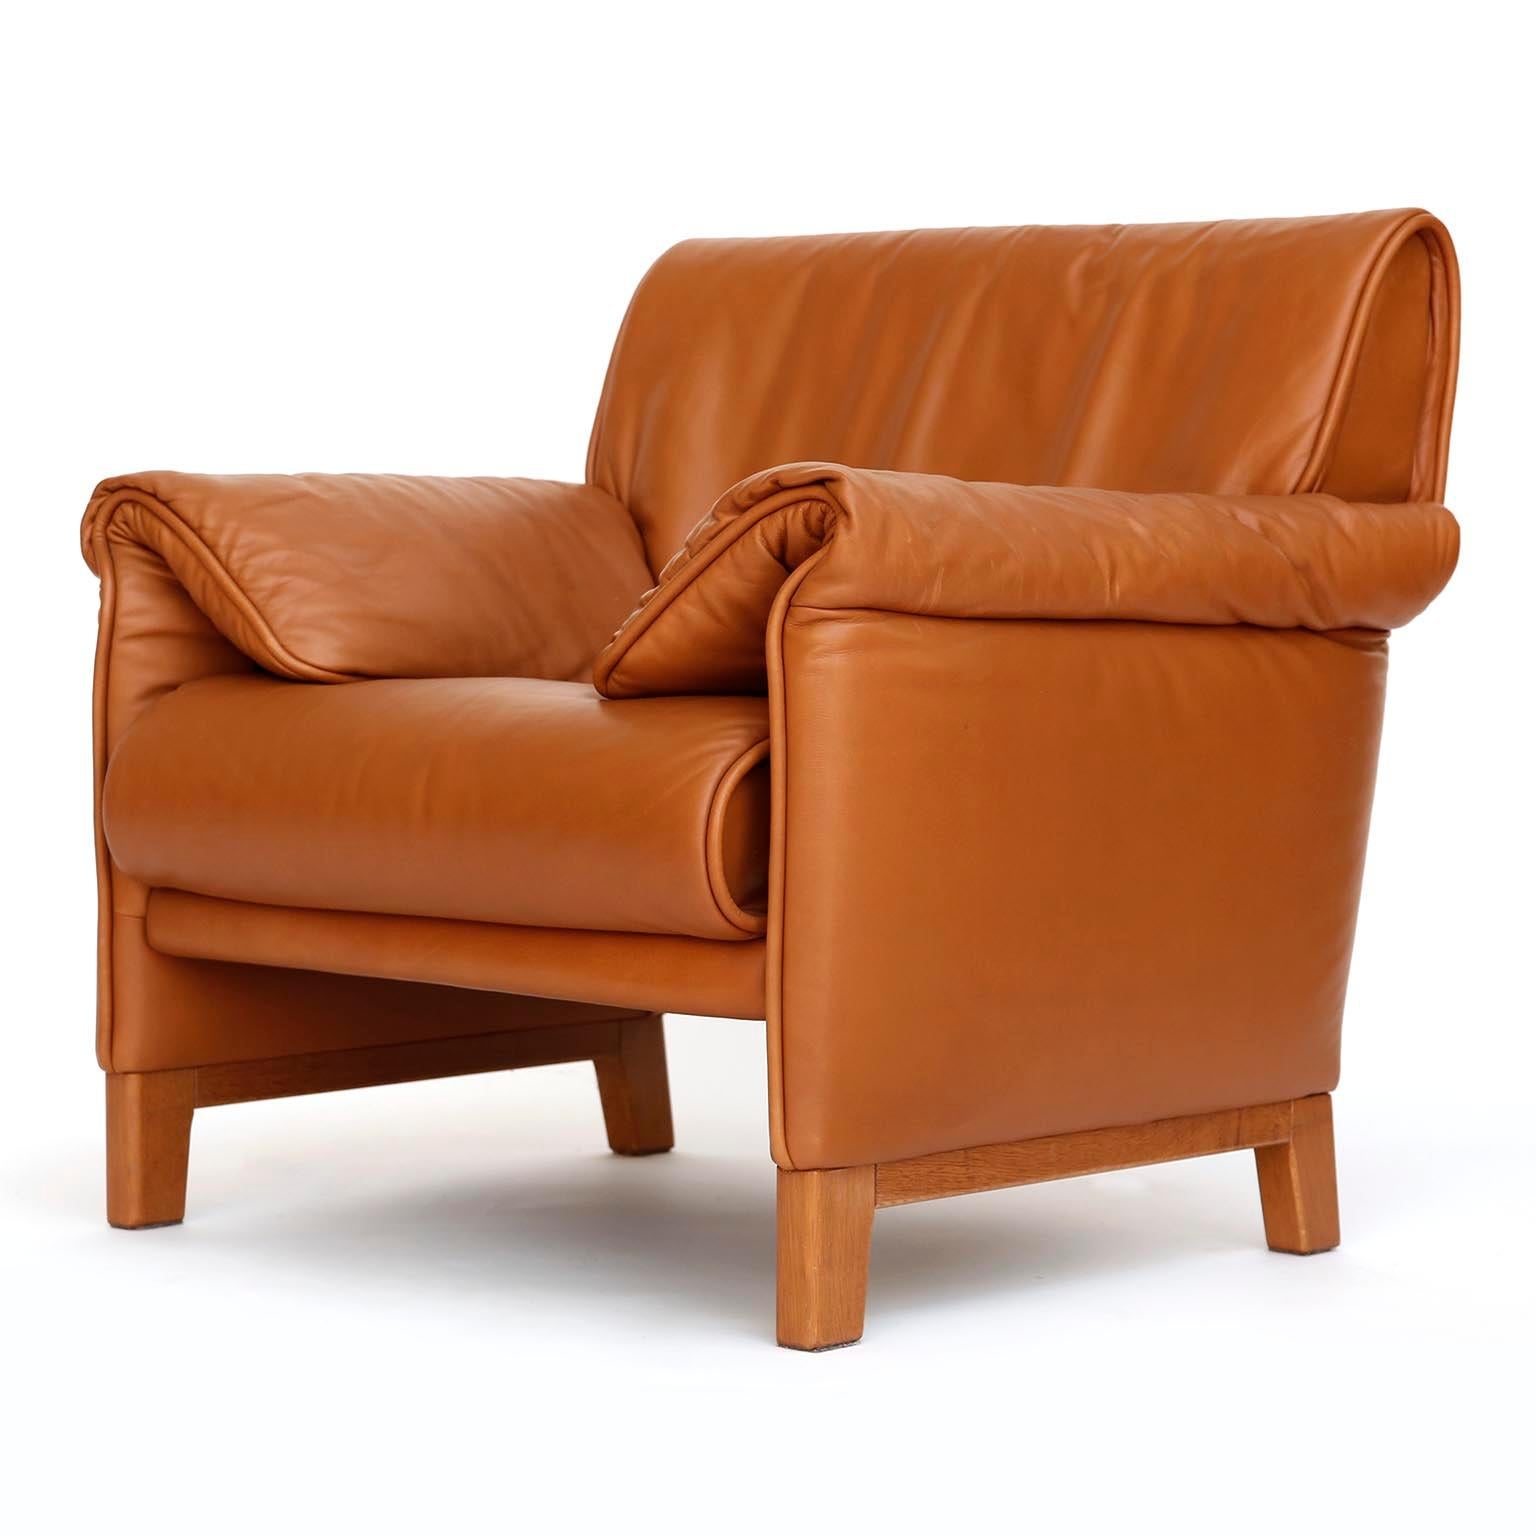 Ein Paar De Sede 'DS-14' Sessel in warmem, hochwertigem cognacbraunem Leder mit einem massiven Teakholzgestell, entworfen 1989 und hergestellt zwischen 1989 und 1997.
Die Stühle sind in sehr gutem und fast neuem Zustand. Sie sind innen mit De Sede